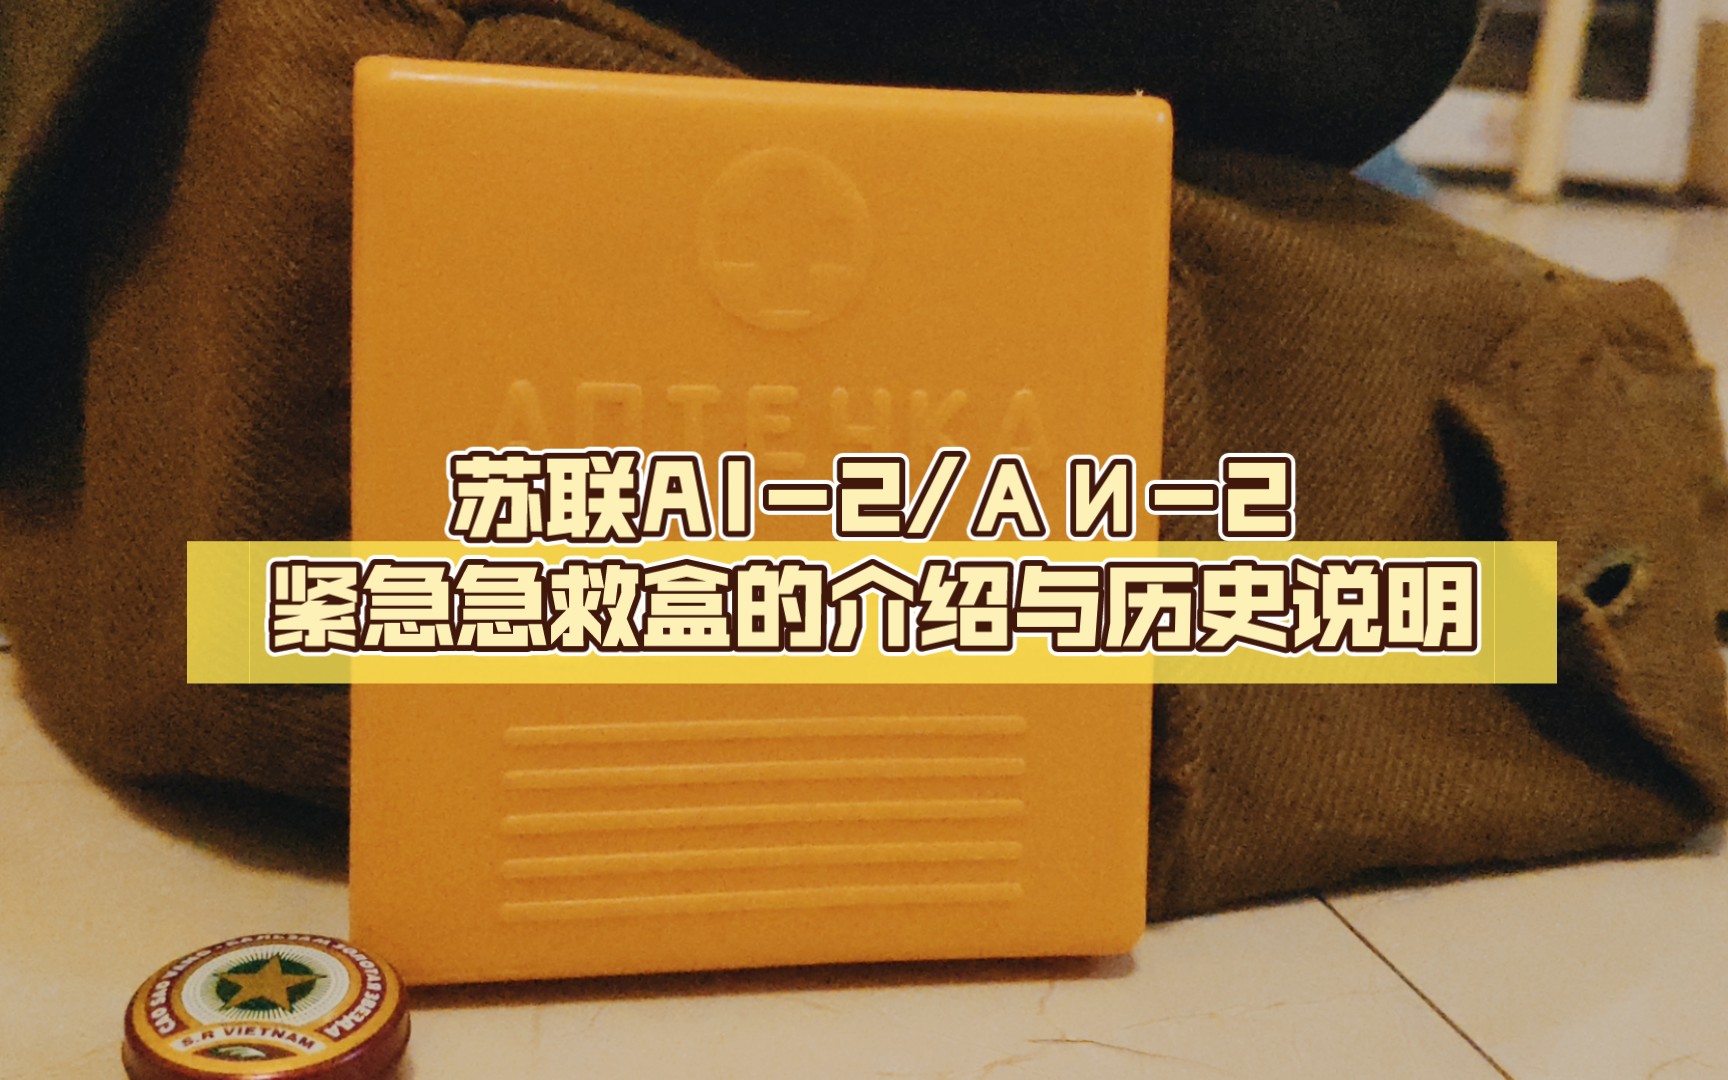 (苏联藏品)经典的“小黄片”:苏联AI-2/АИ-2紧急急救盒的介绍与历史说明